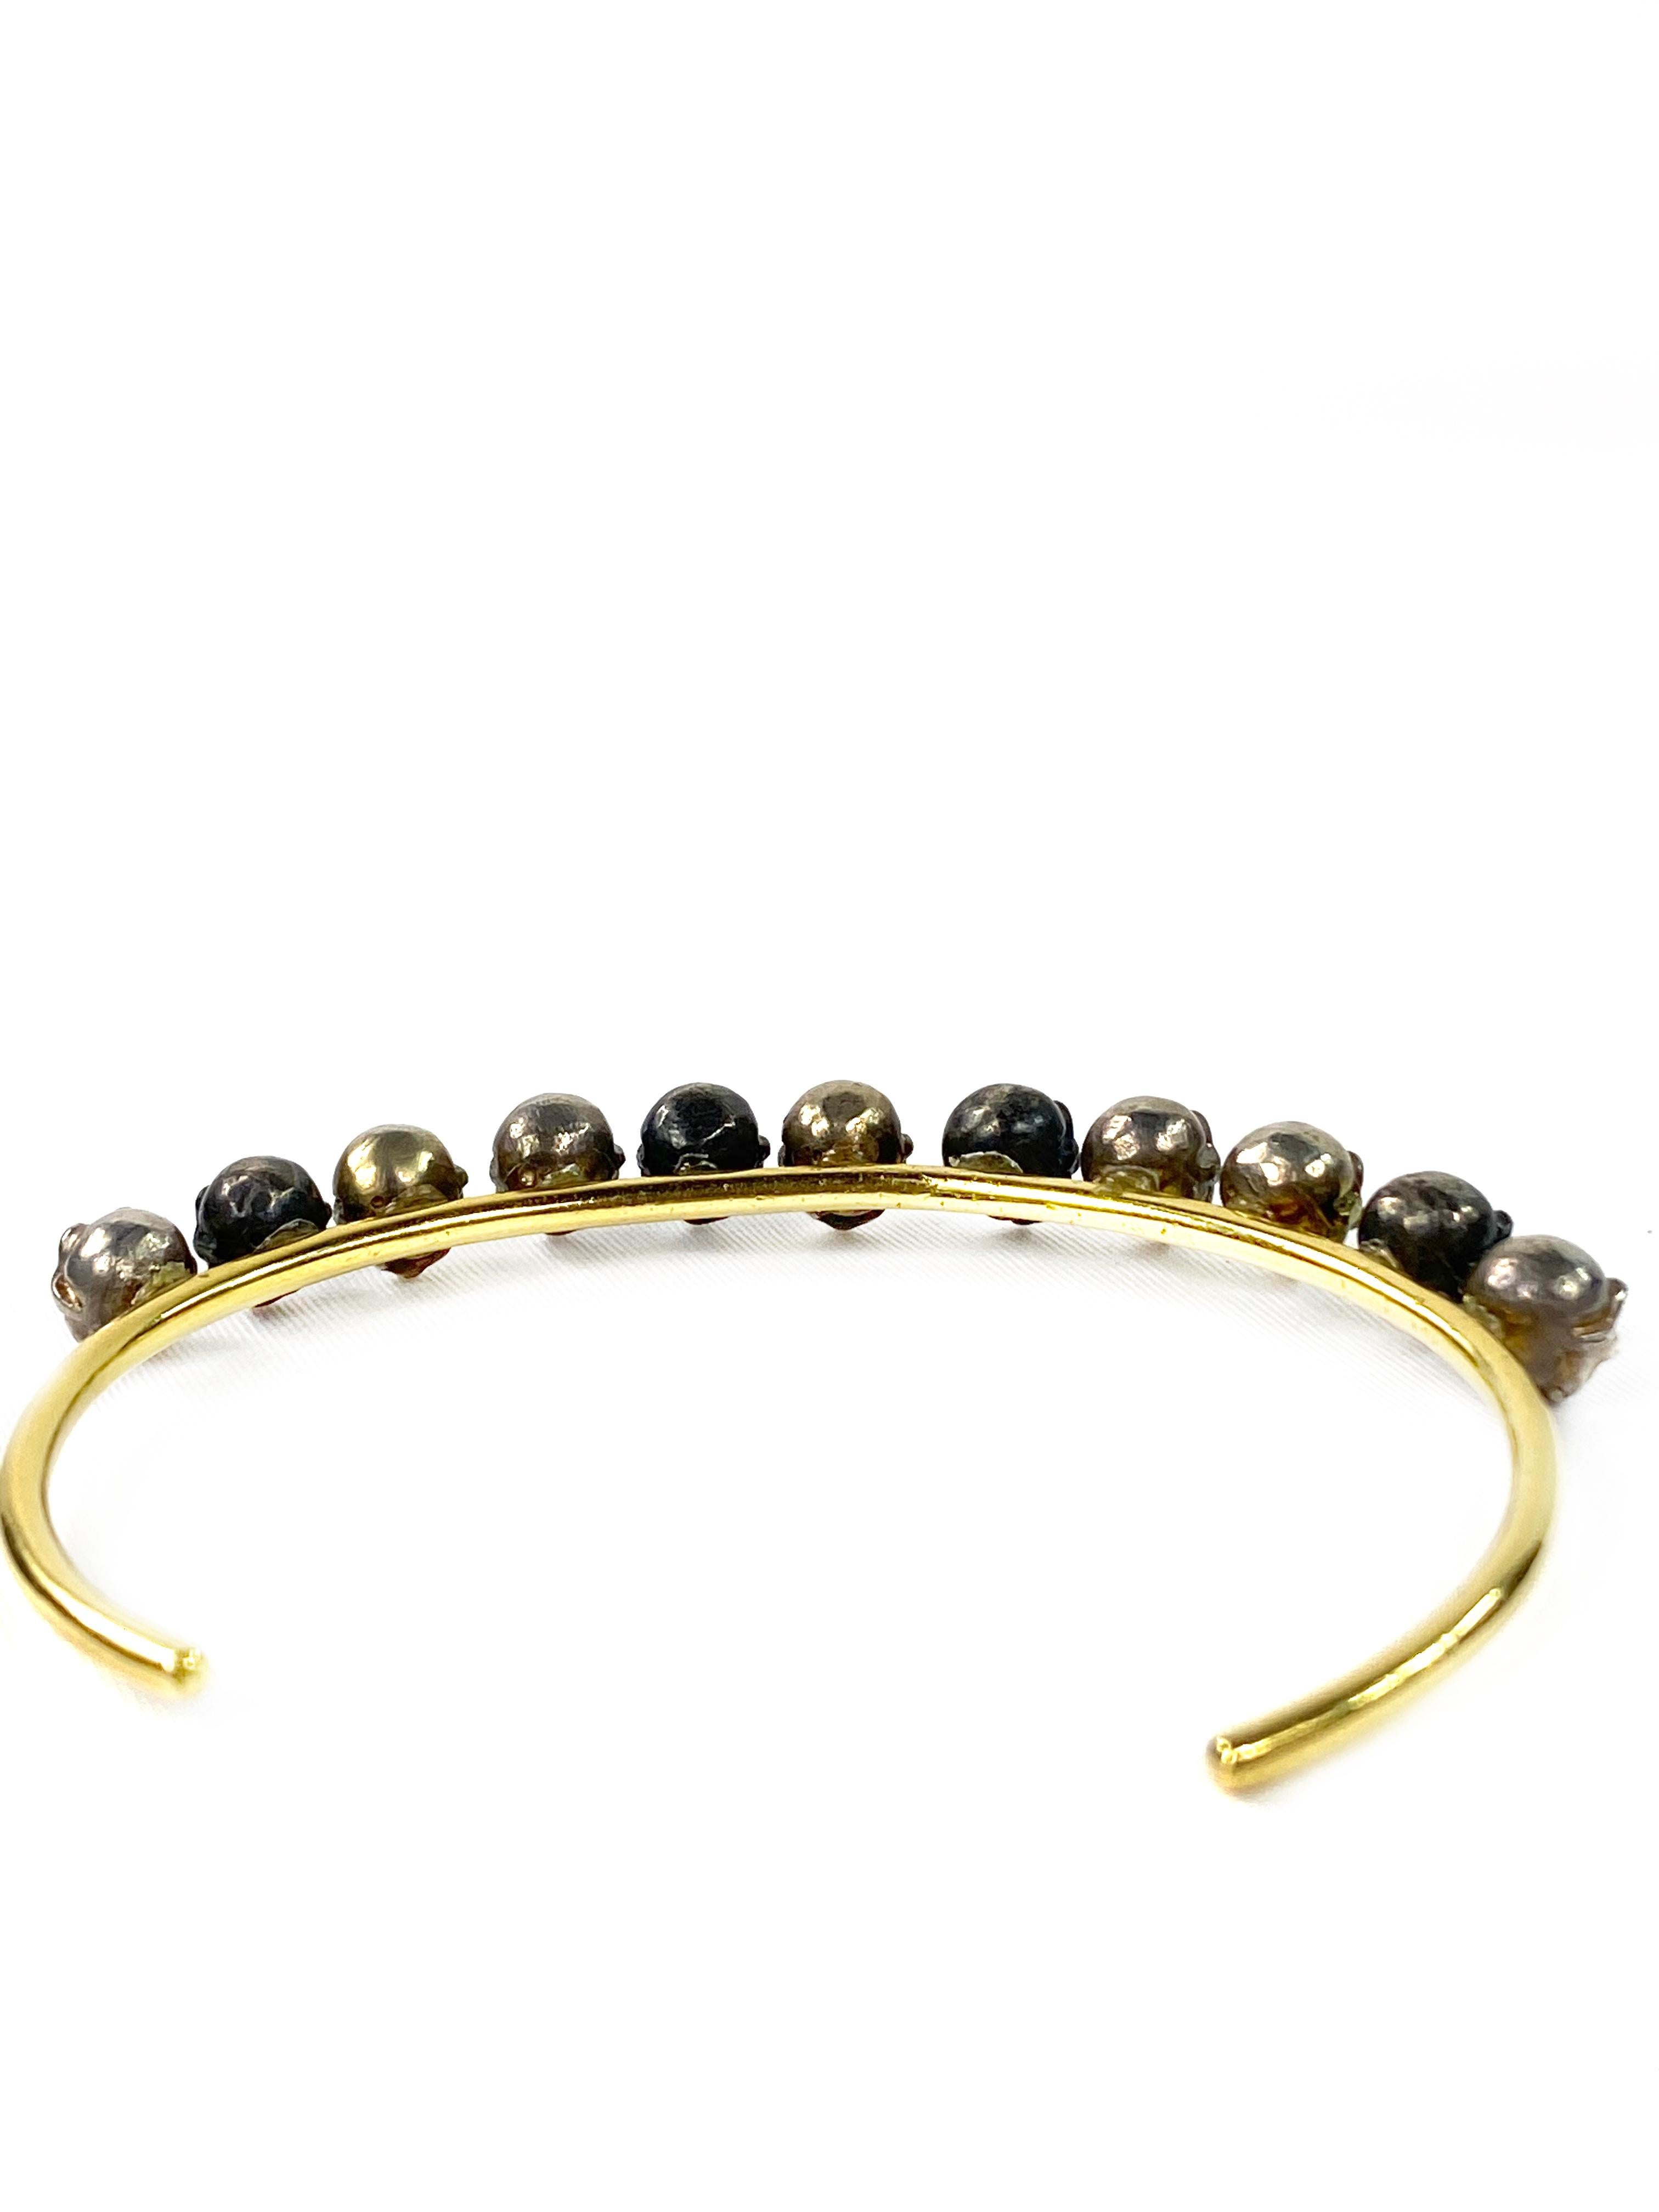 Women's or Men's Delfina Delettrez Yellow Gold Scull Bangle Bracelet For Sale